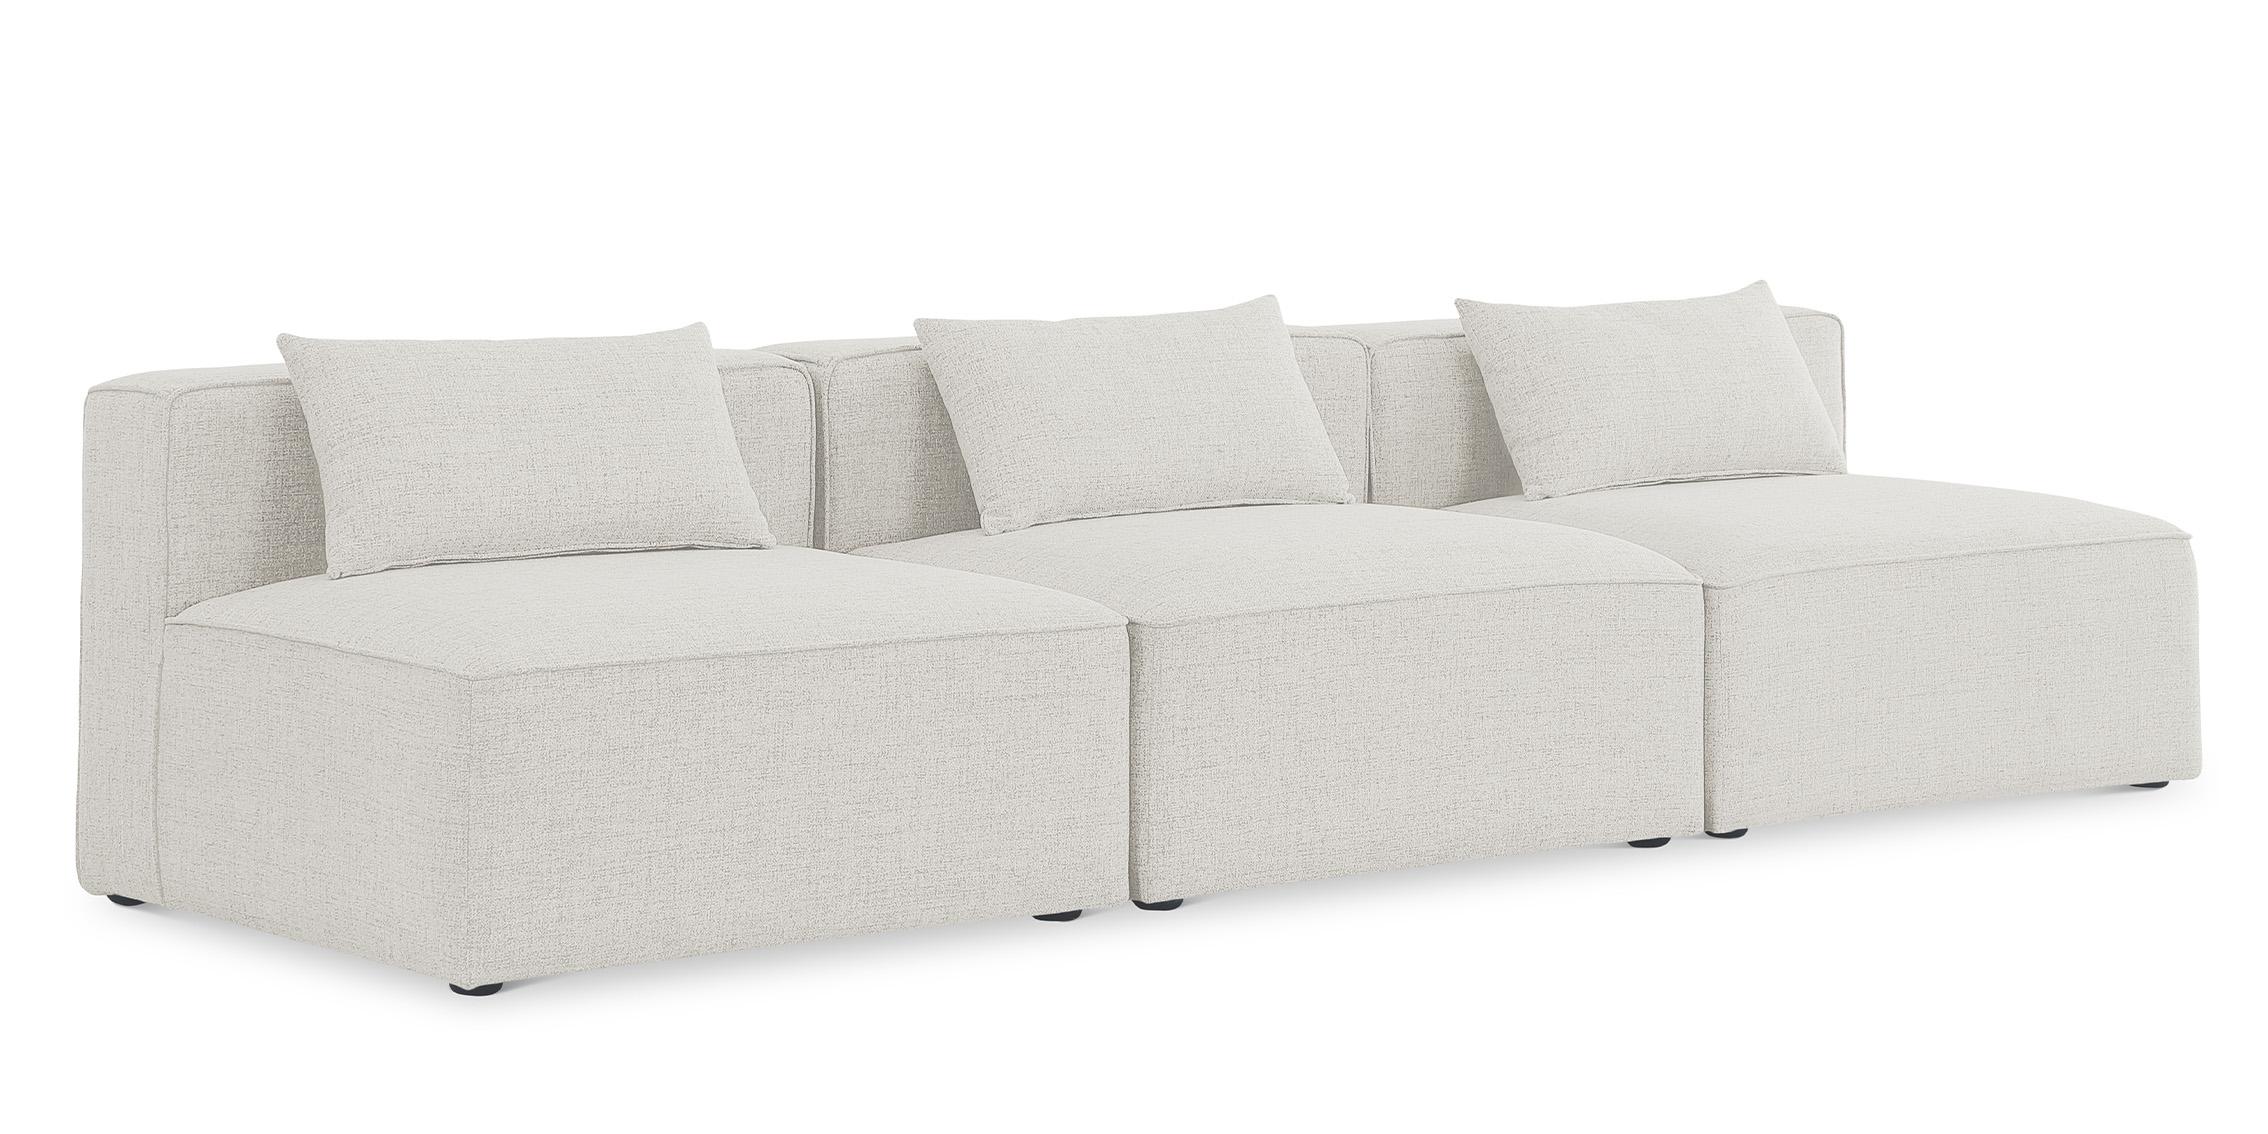 Contemporary, Modern Modular Sofa CUBE 630Cream-S108A 630Cream-S108A in Cream Linen